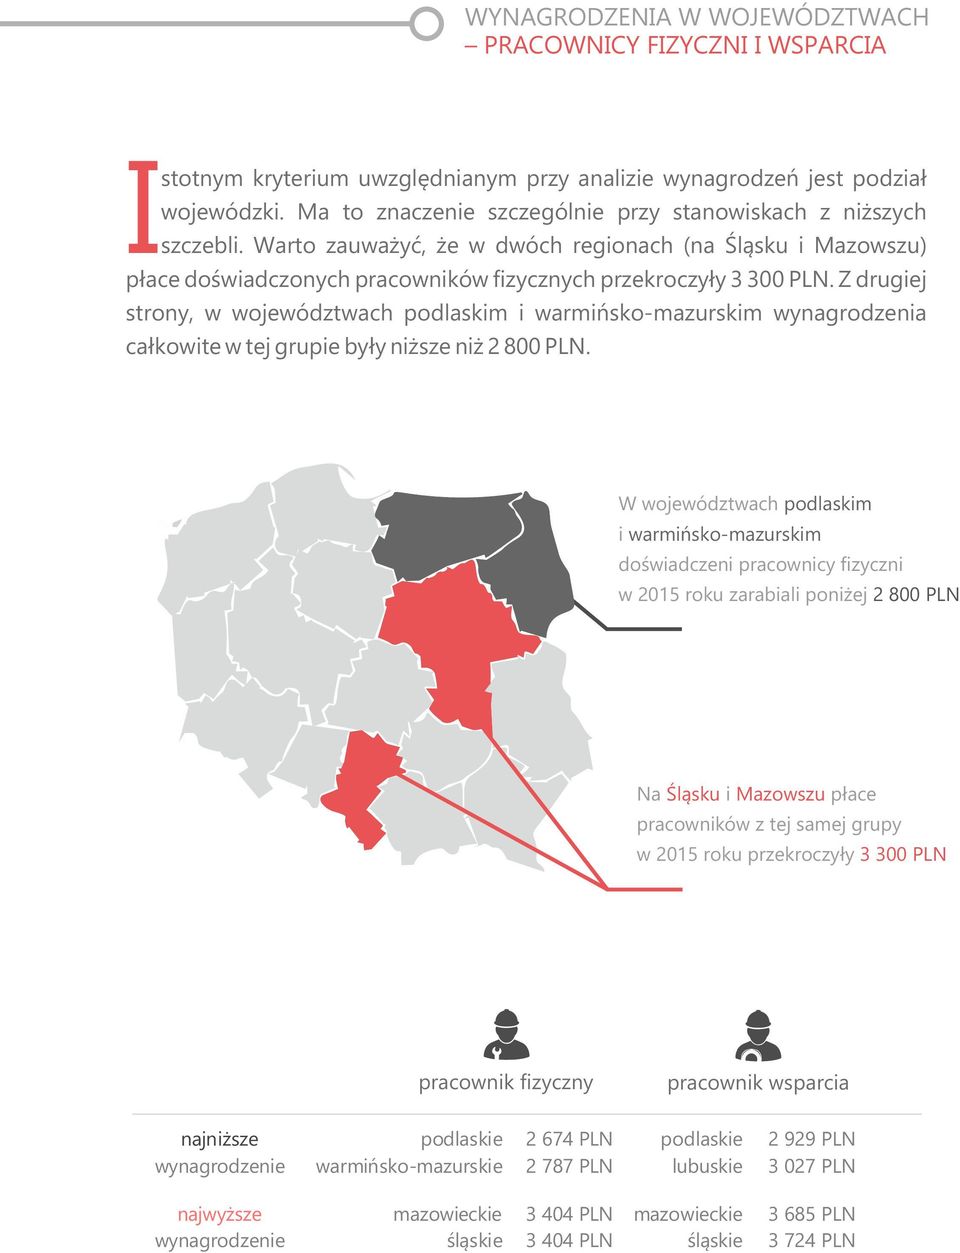 Z drugiej strony, w województwach podlaskim i warmińsko-mazurskim wynagrodzenia całkowite w tej grupie były niższe niż 2 800 PLN.